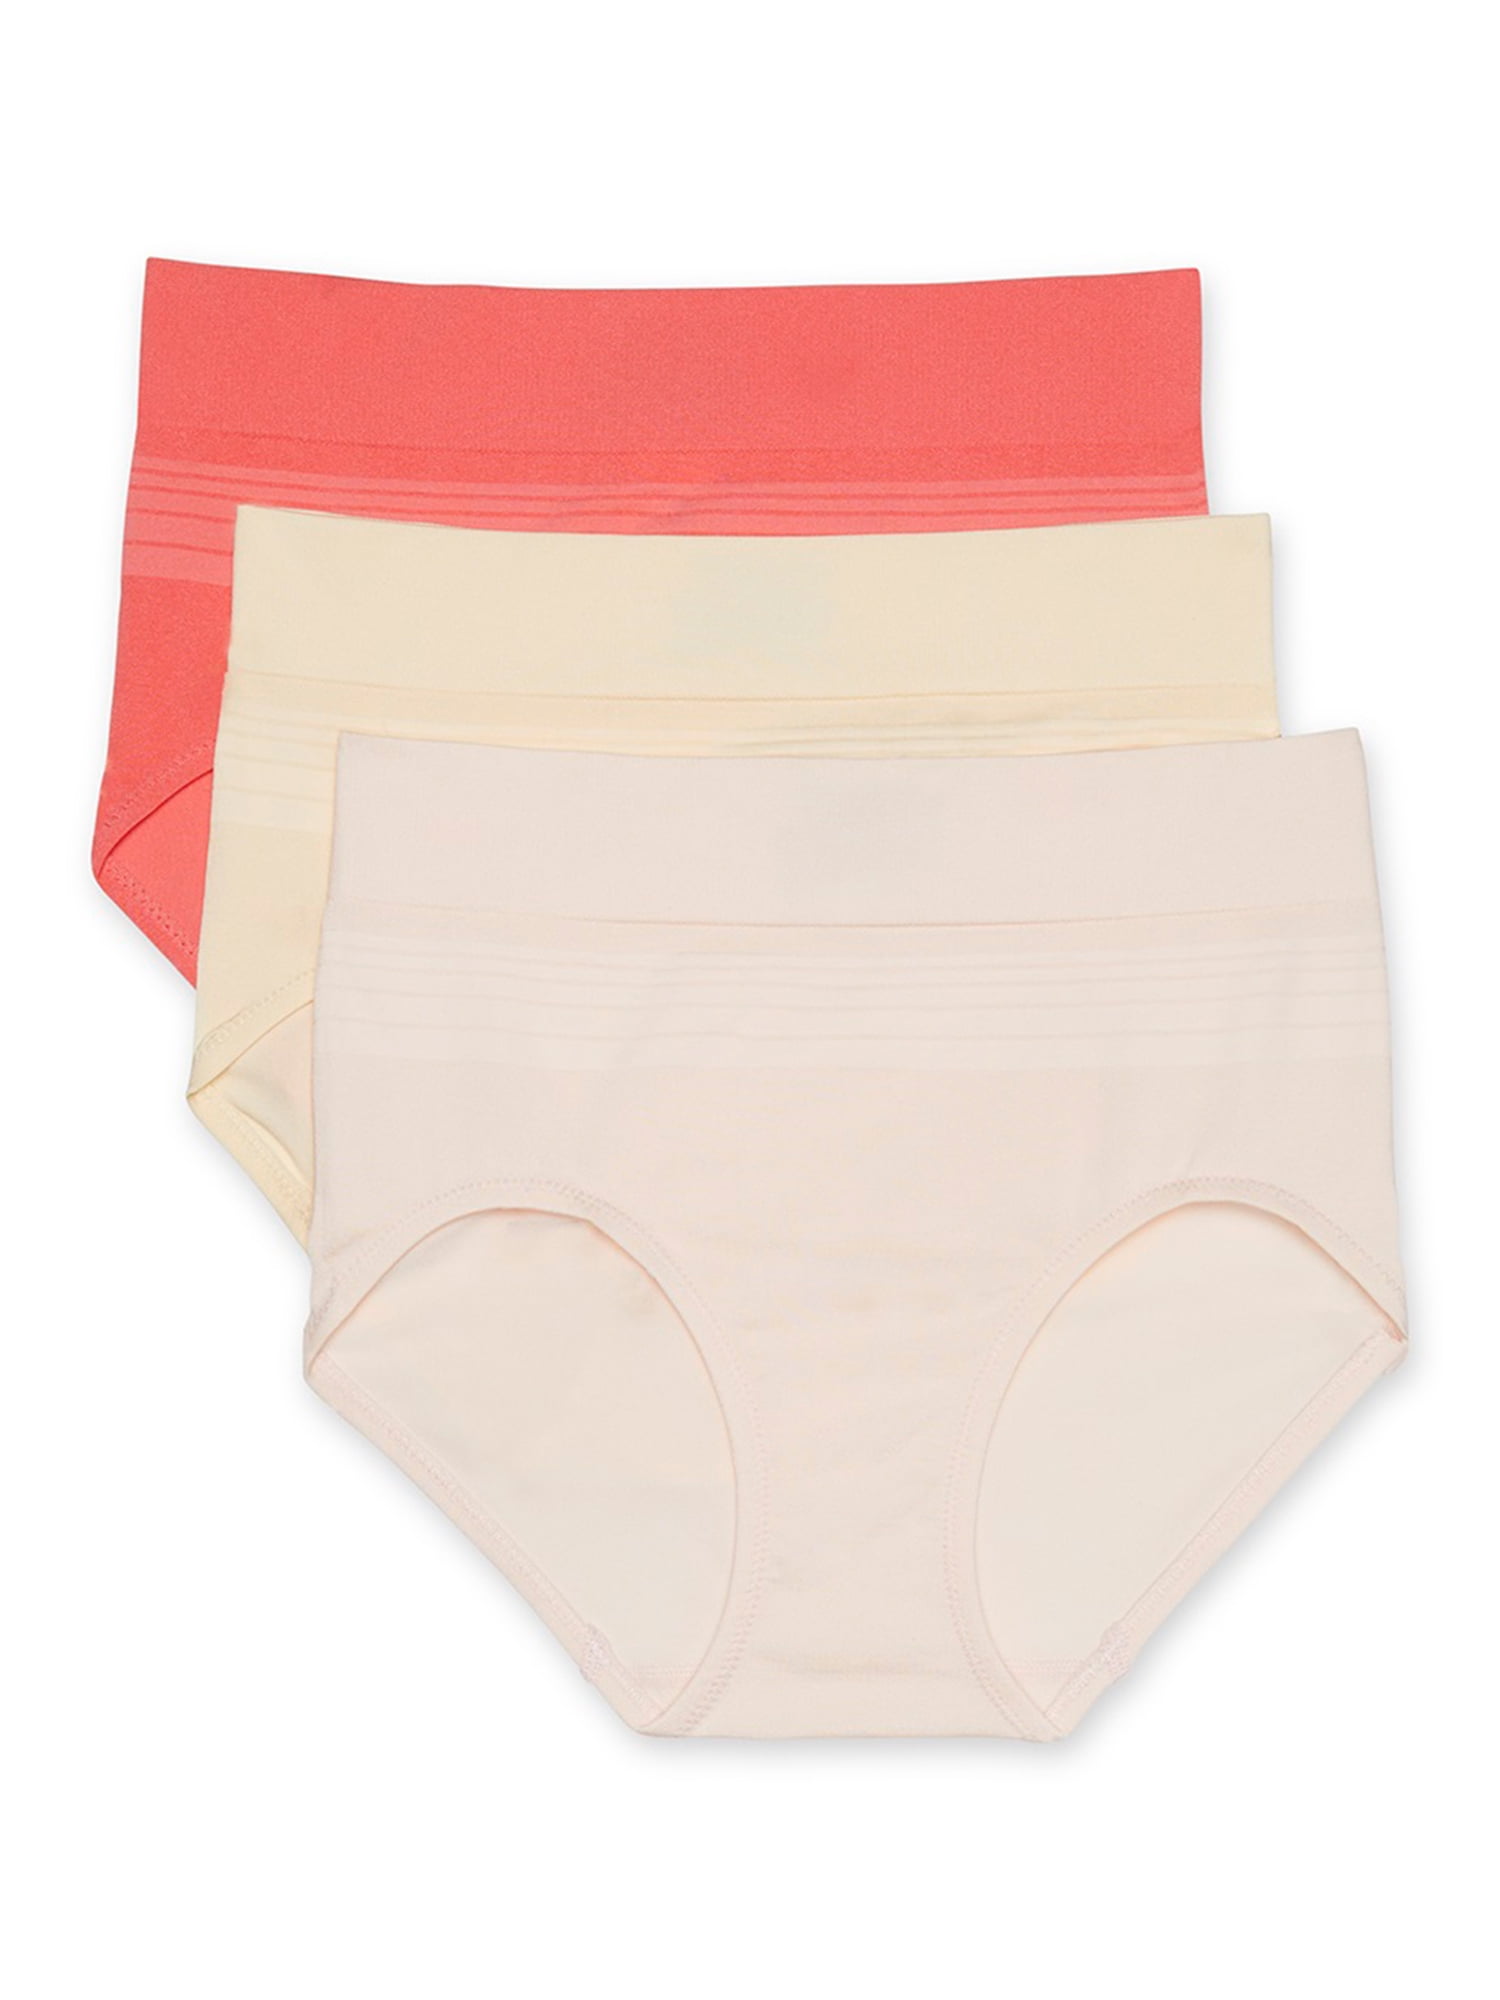 3 Warner's 6173 Brief Panties Nylon Blend Size 6 M